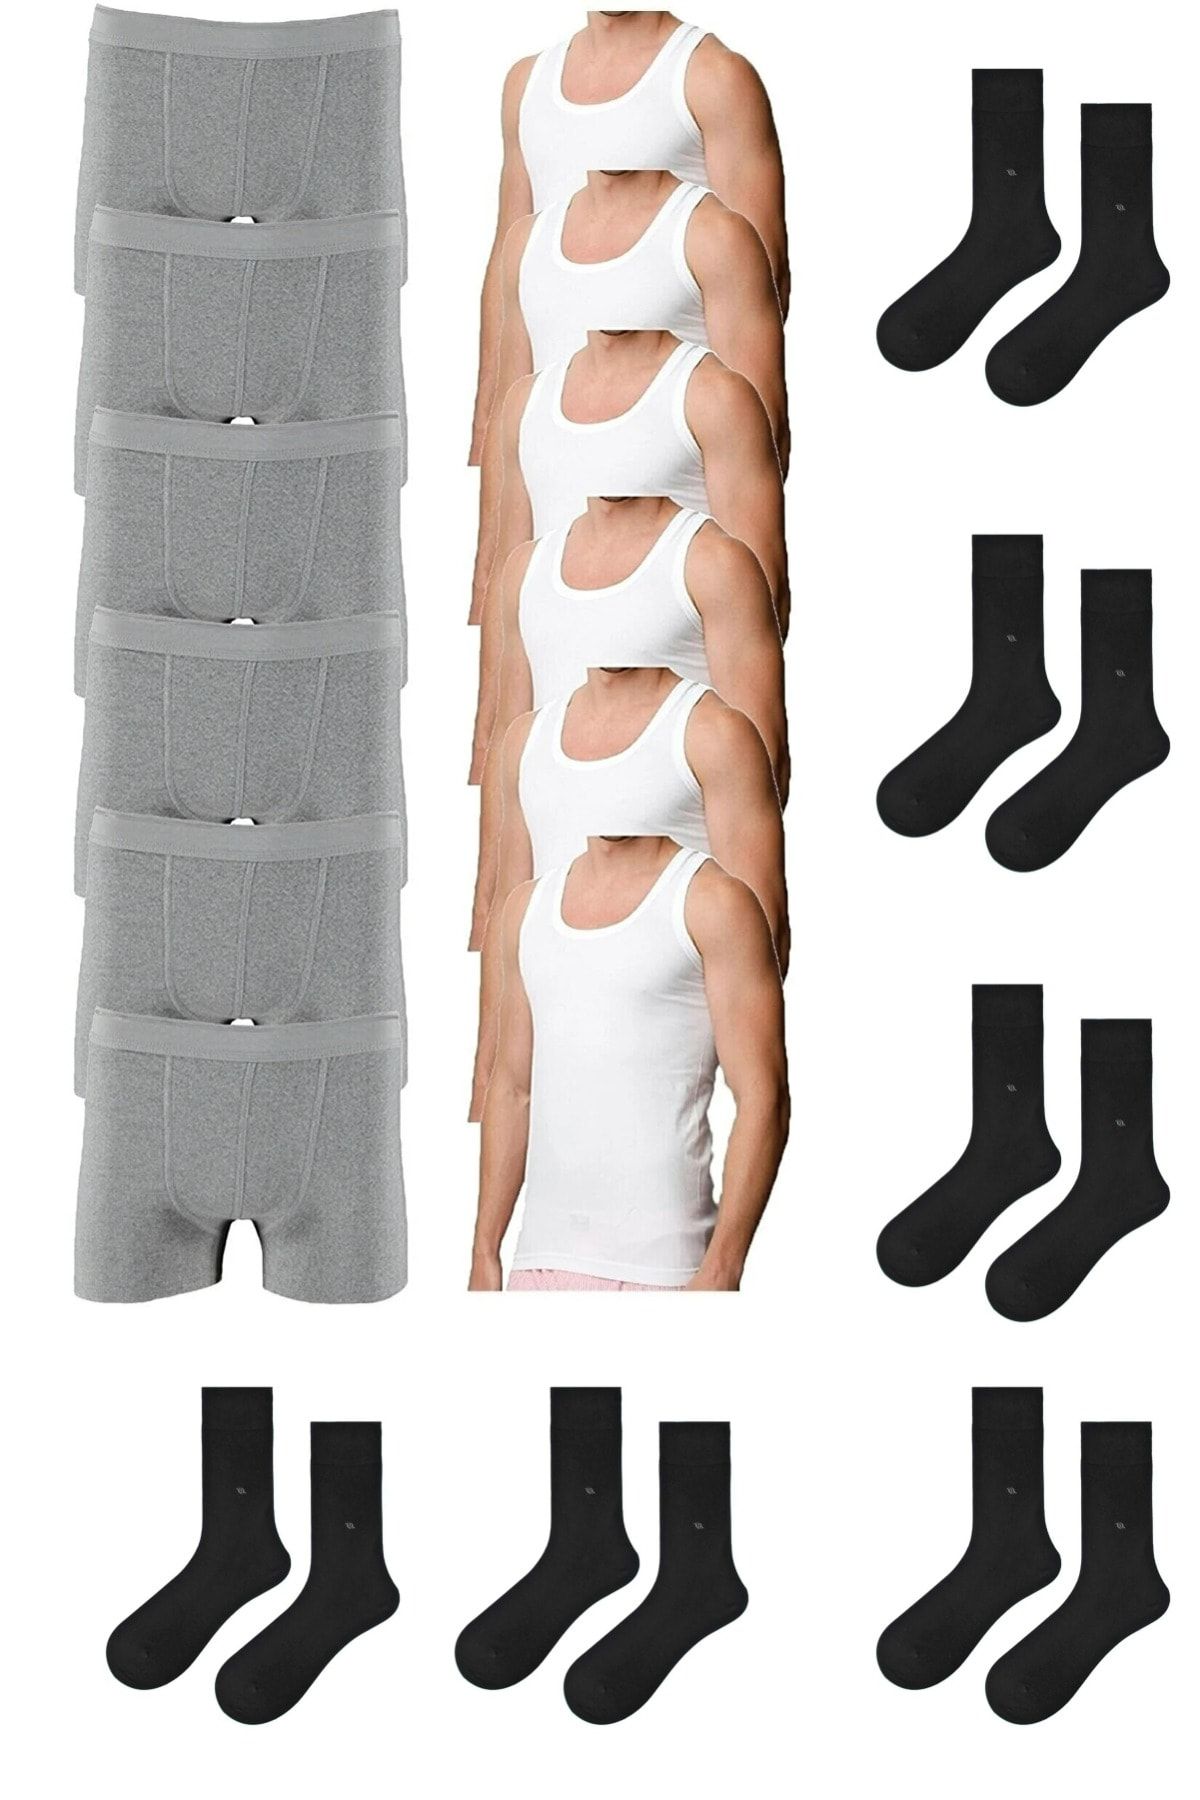 Black Socks & Underwear for Men